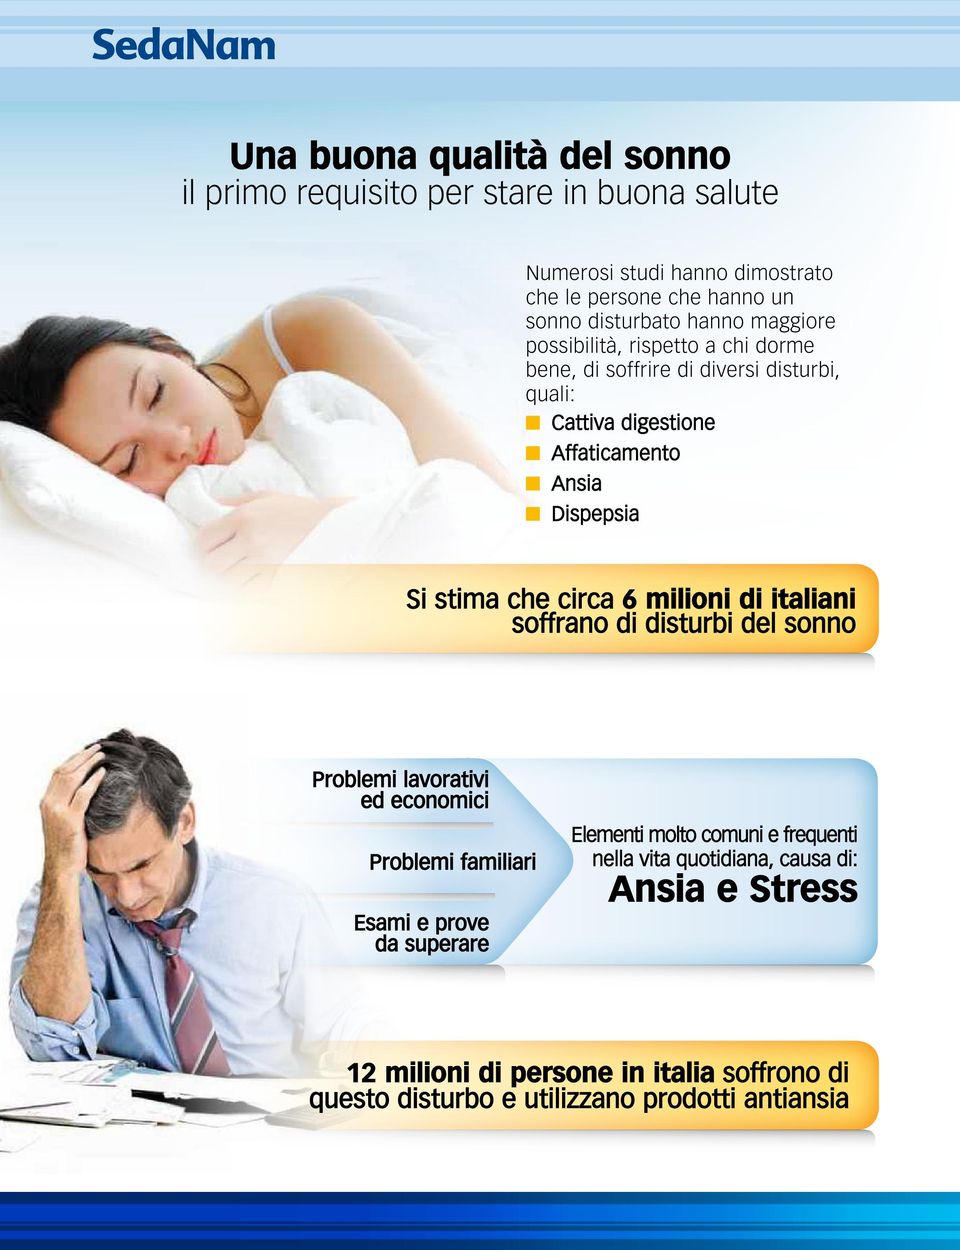 che circa 6 milioni di italiani soffrano di disturbi del sonno Problemi lavorativi ed economici Problemi familiari Esami e prove da superare Elementi